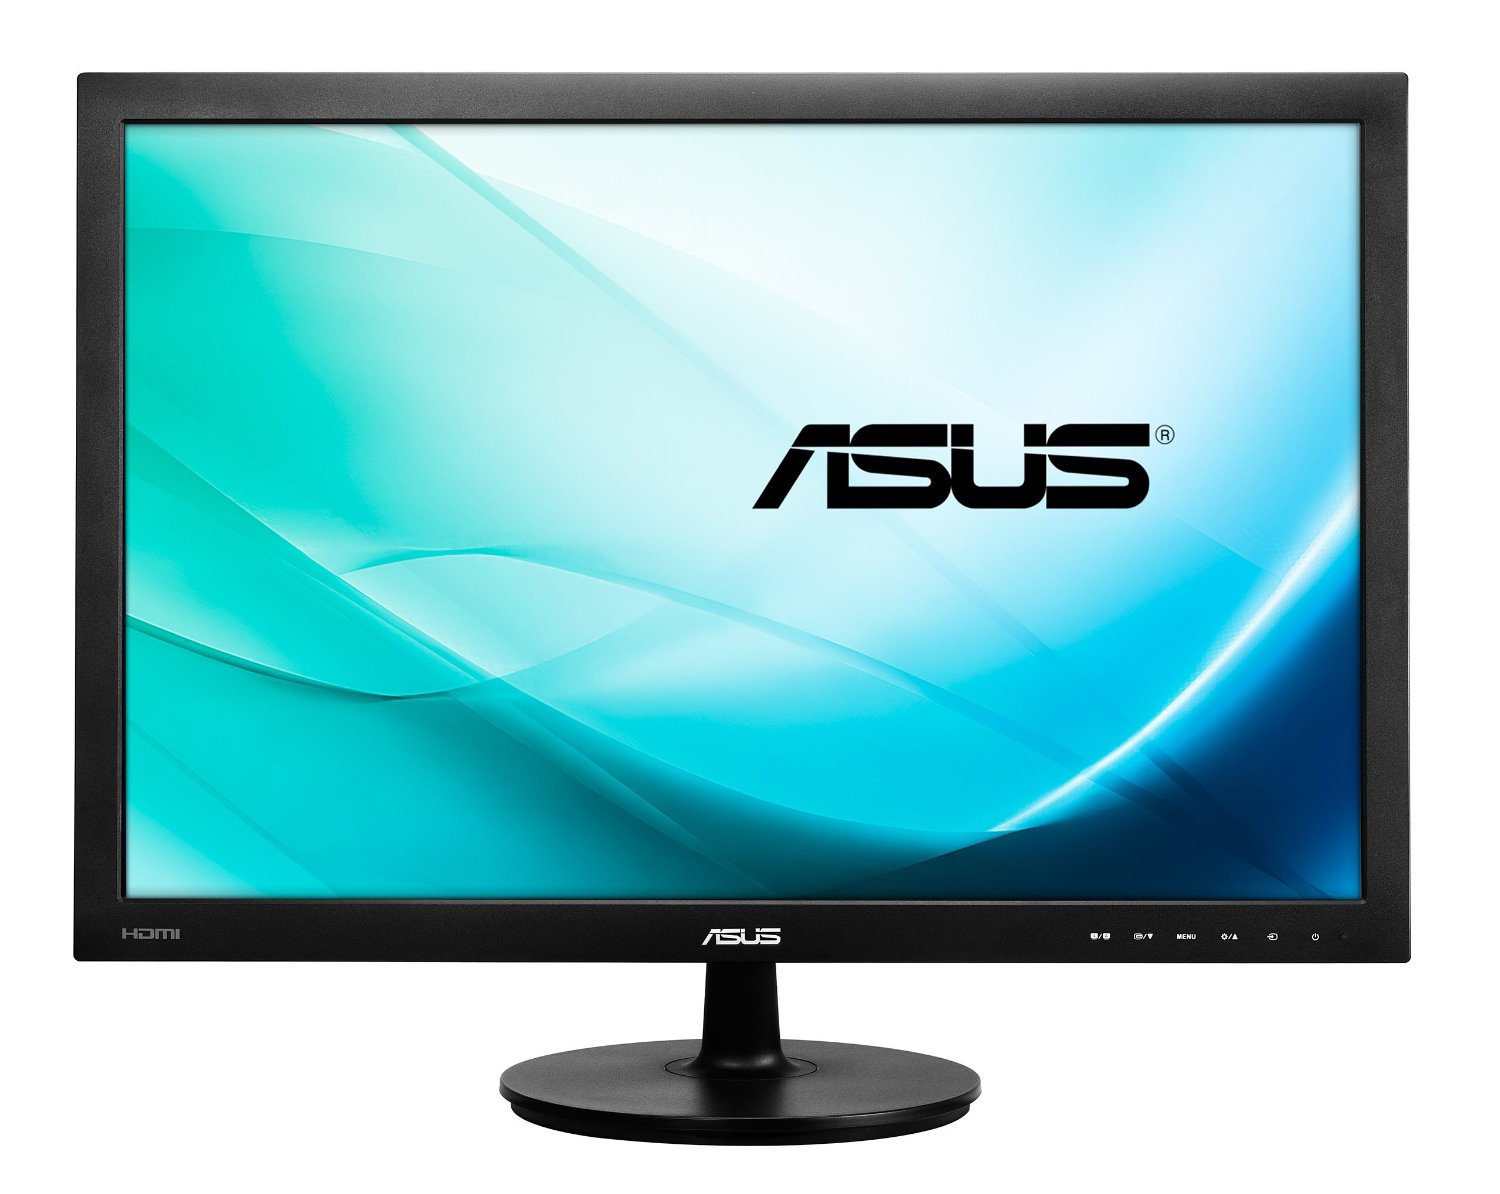 Gran oportunidad para comprar un monitor de PC barato: este Acer con 100 Hz  de refresco cuesta menos de 90 euros en PcComponentes